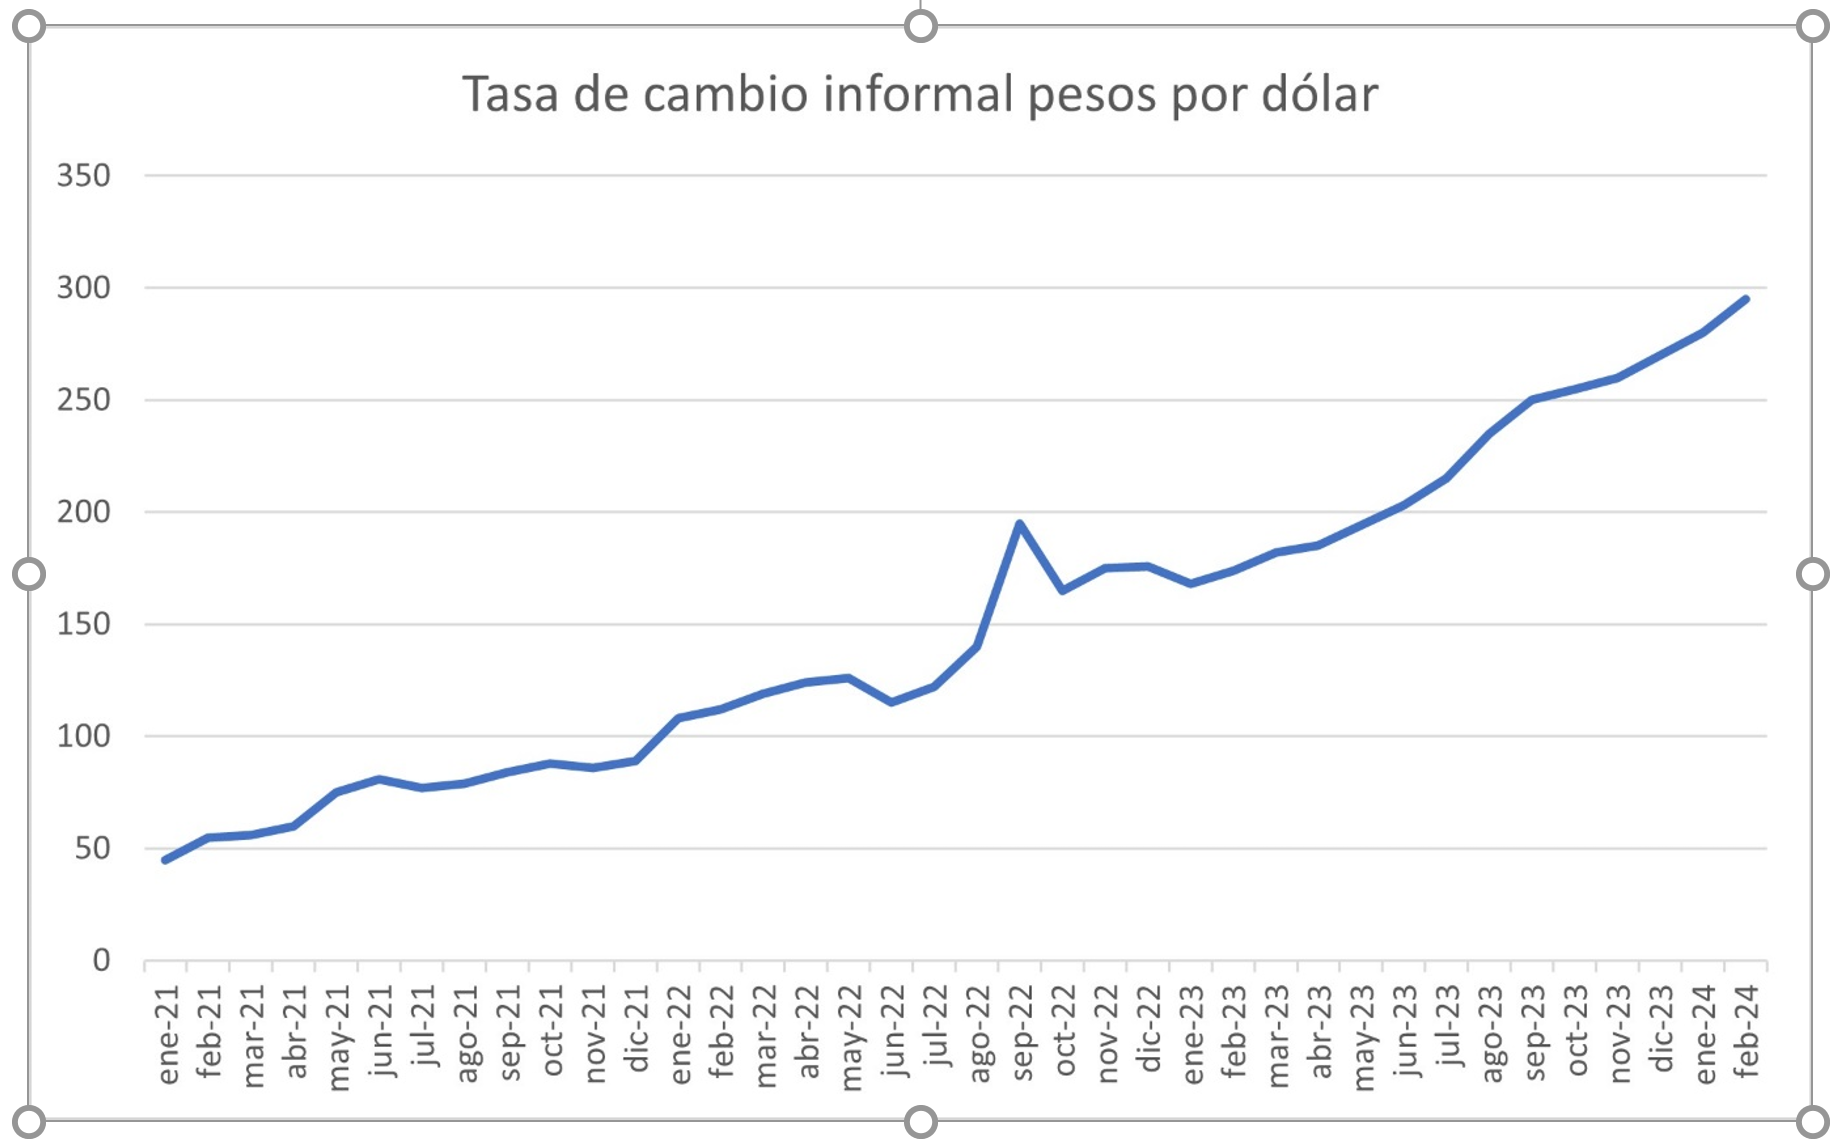 Tasa de cambio informal pesos por dólar desde enero 2021 en donde el cambio era casi 50 hasta febrero 2024 en donde el cambio había subido a casi 300